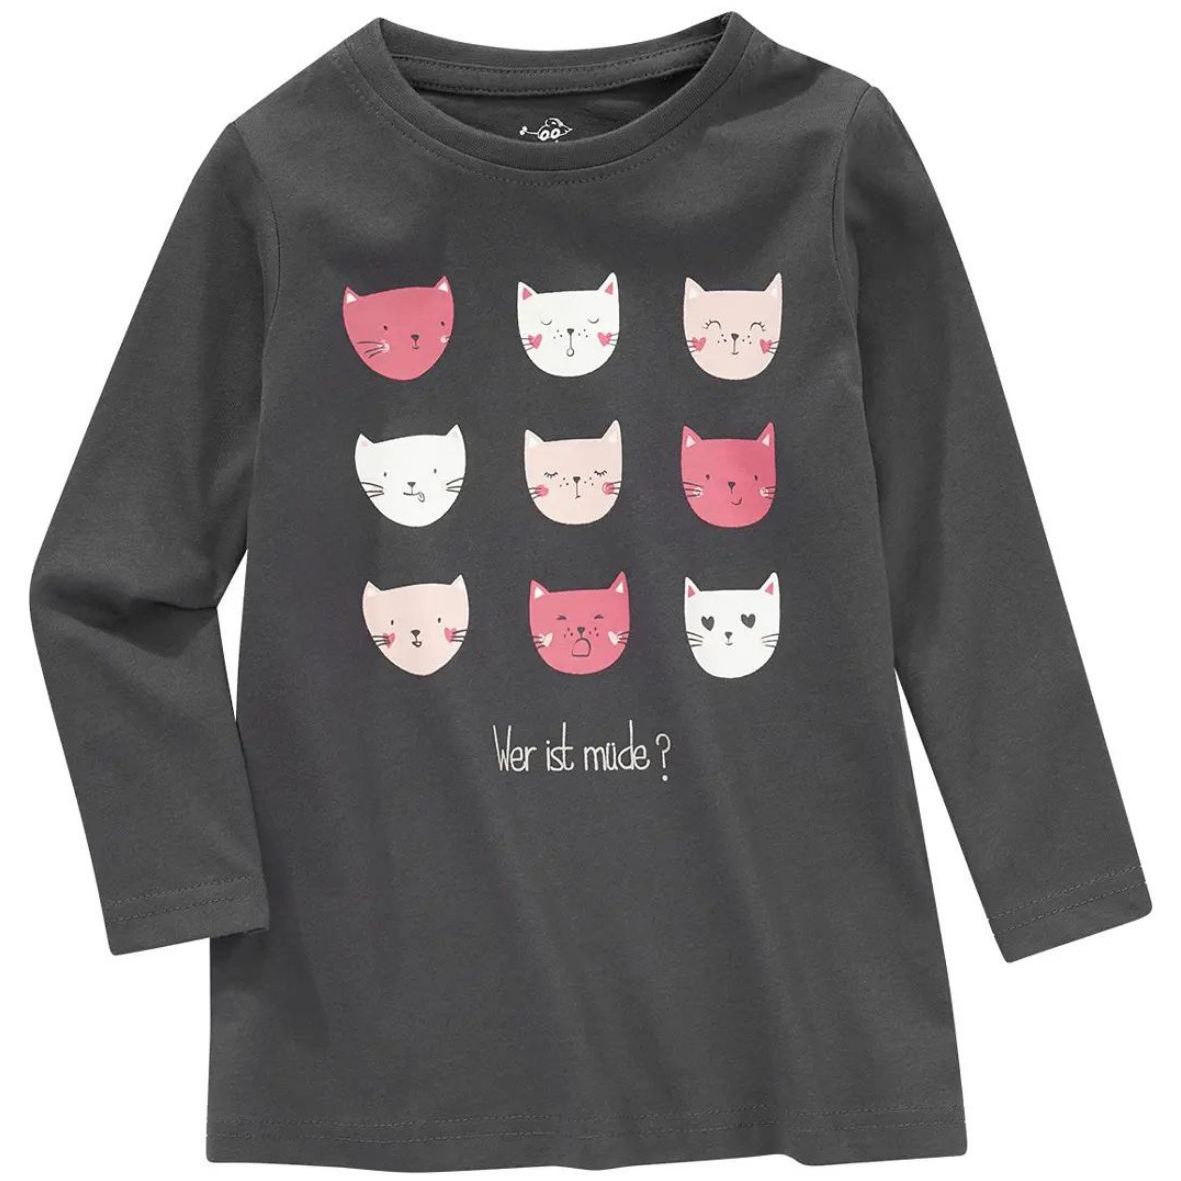 تی شرت آستین بلند دخترانه توپومینی مدل 12654 گربه ها -  - 1